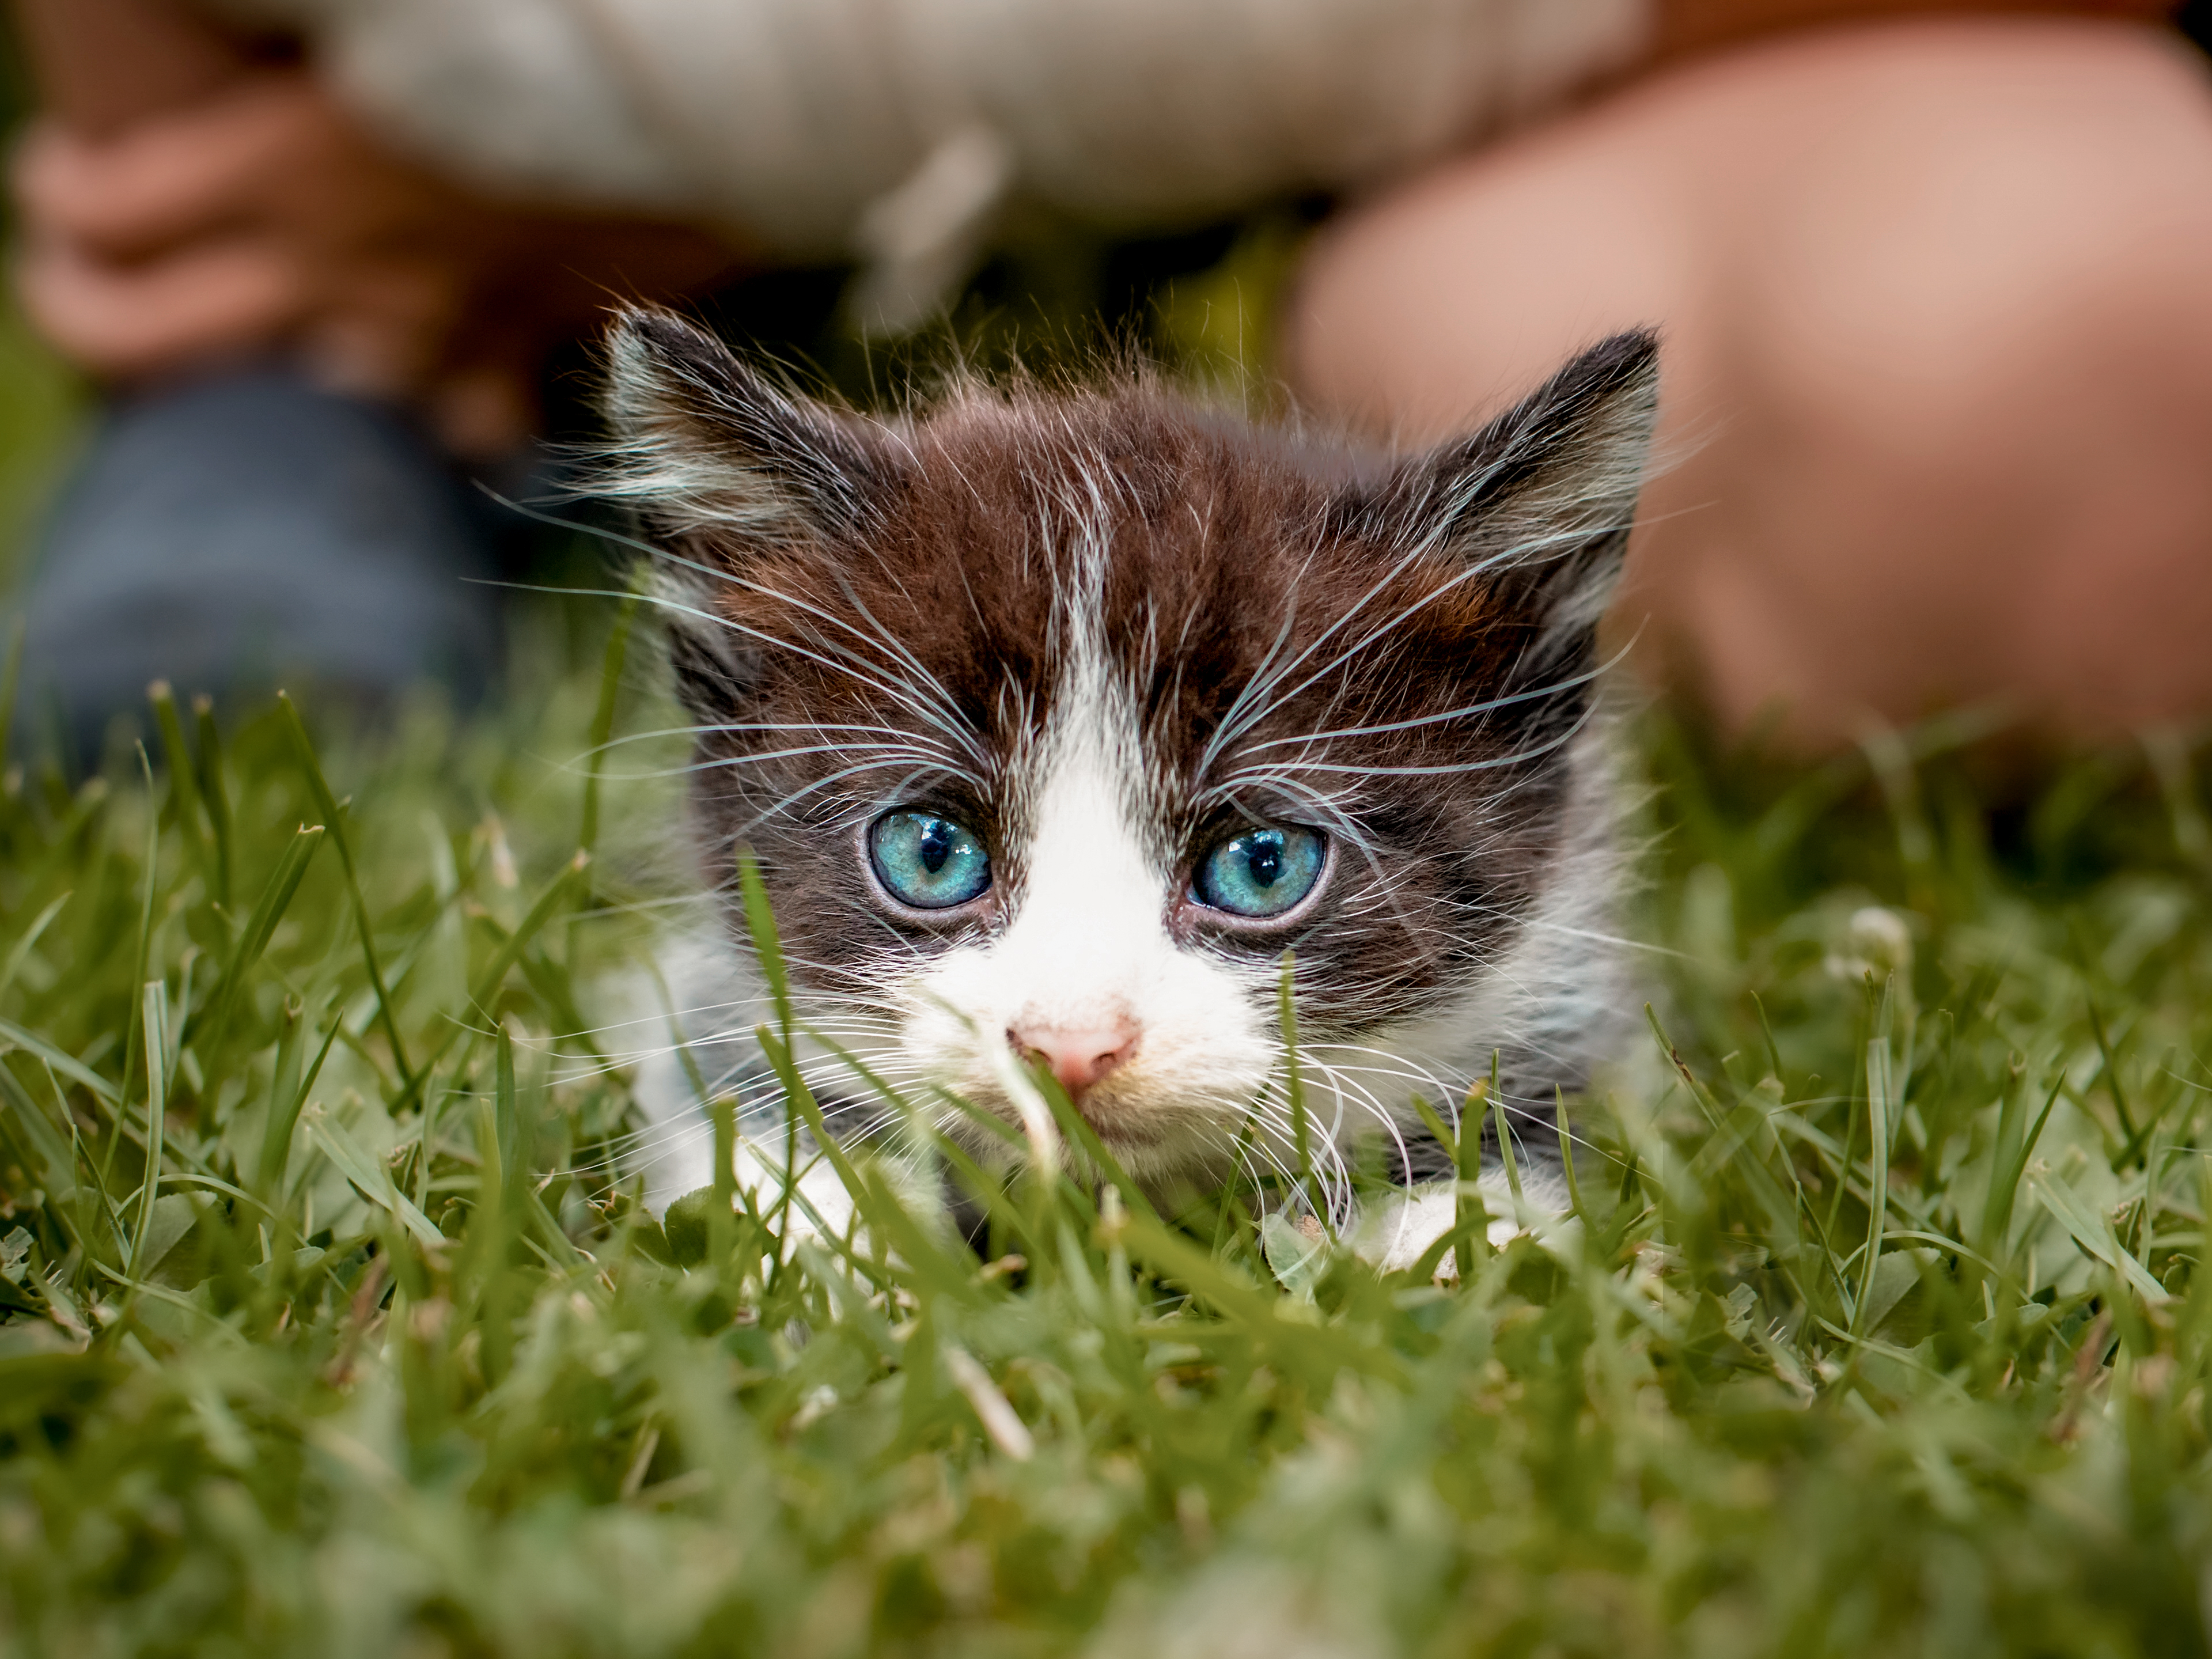 Ein Schwarz-weißes Kätzchen liegt im Gras. Dahinter sind unscharf die Beine einer im Gras hockenden Person zu erkennen